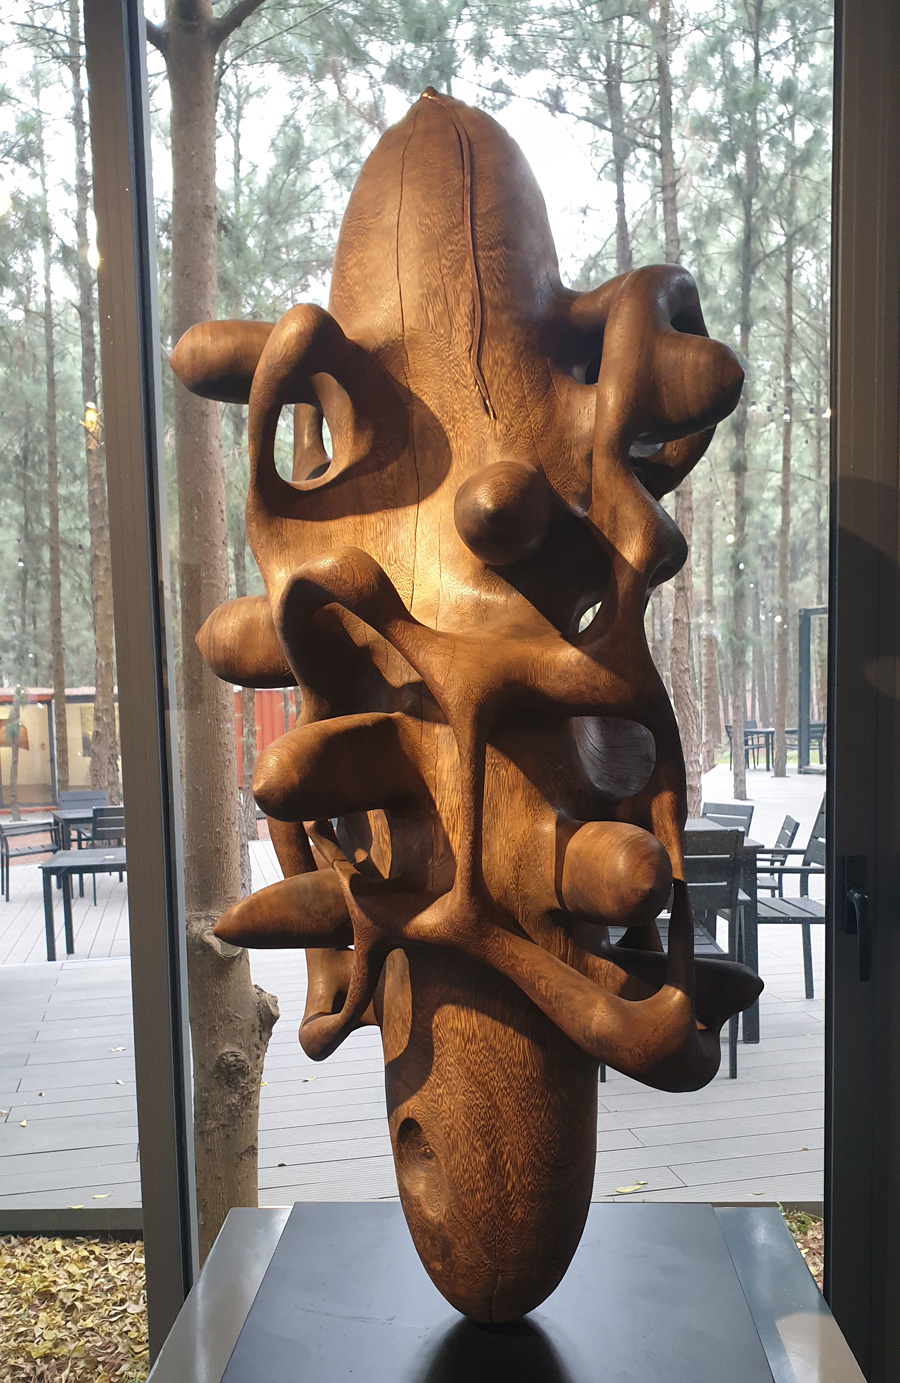 Bảo tàng nghệ thuật đương đại giấu mình dưới rừng thông